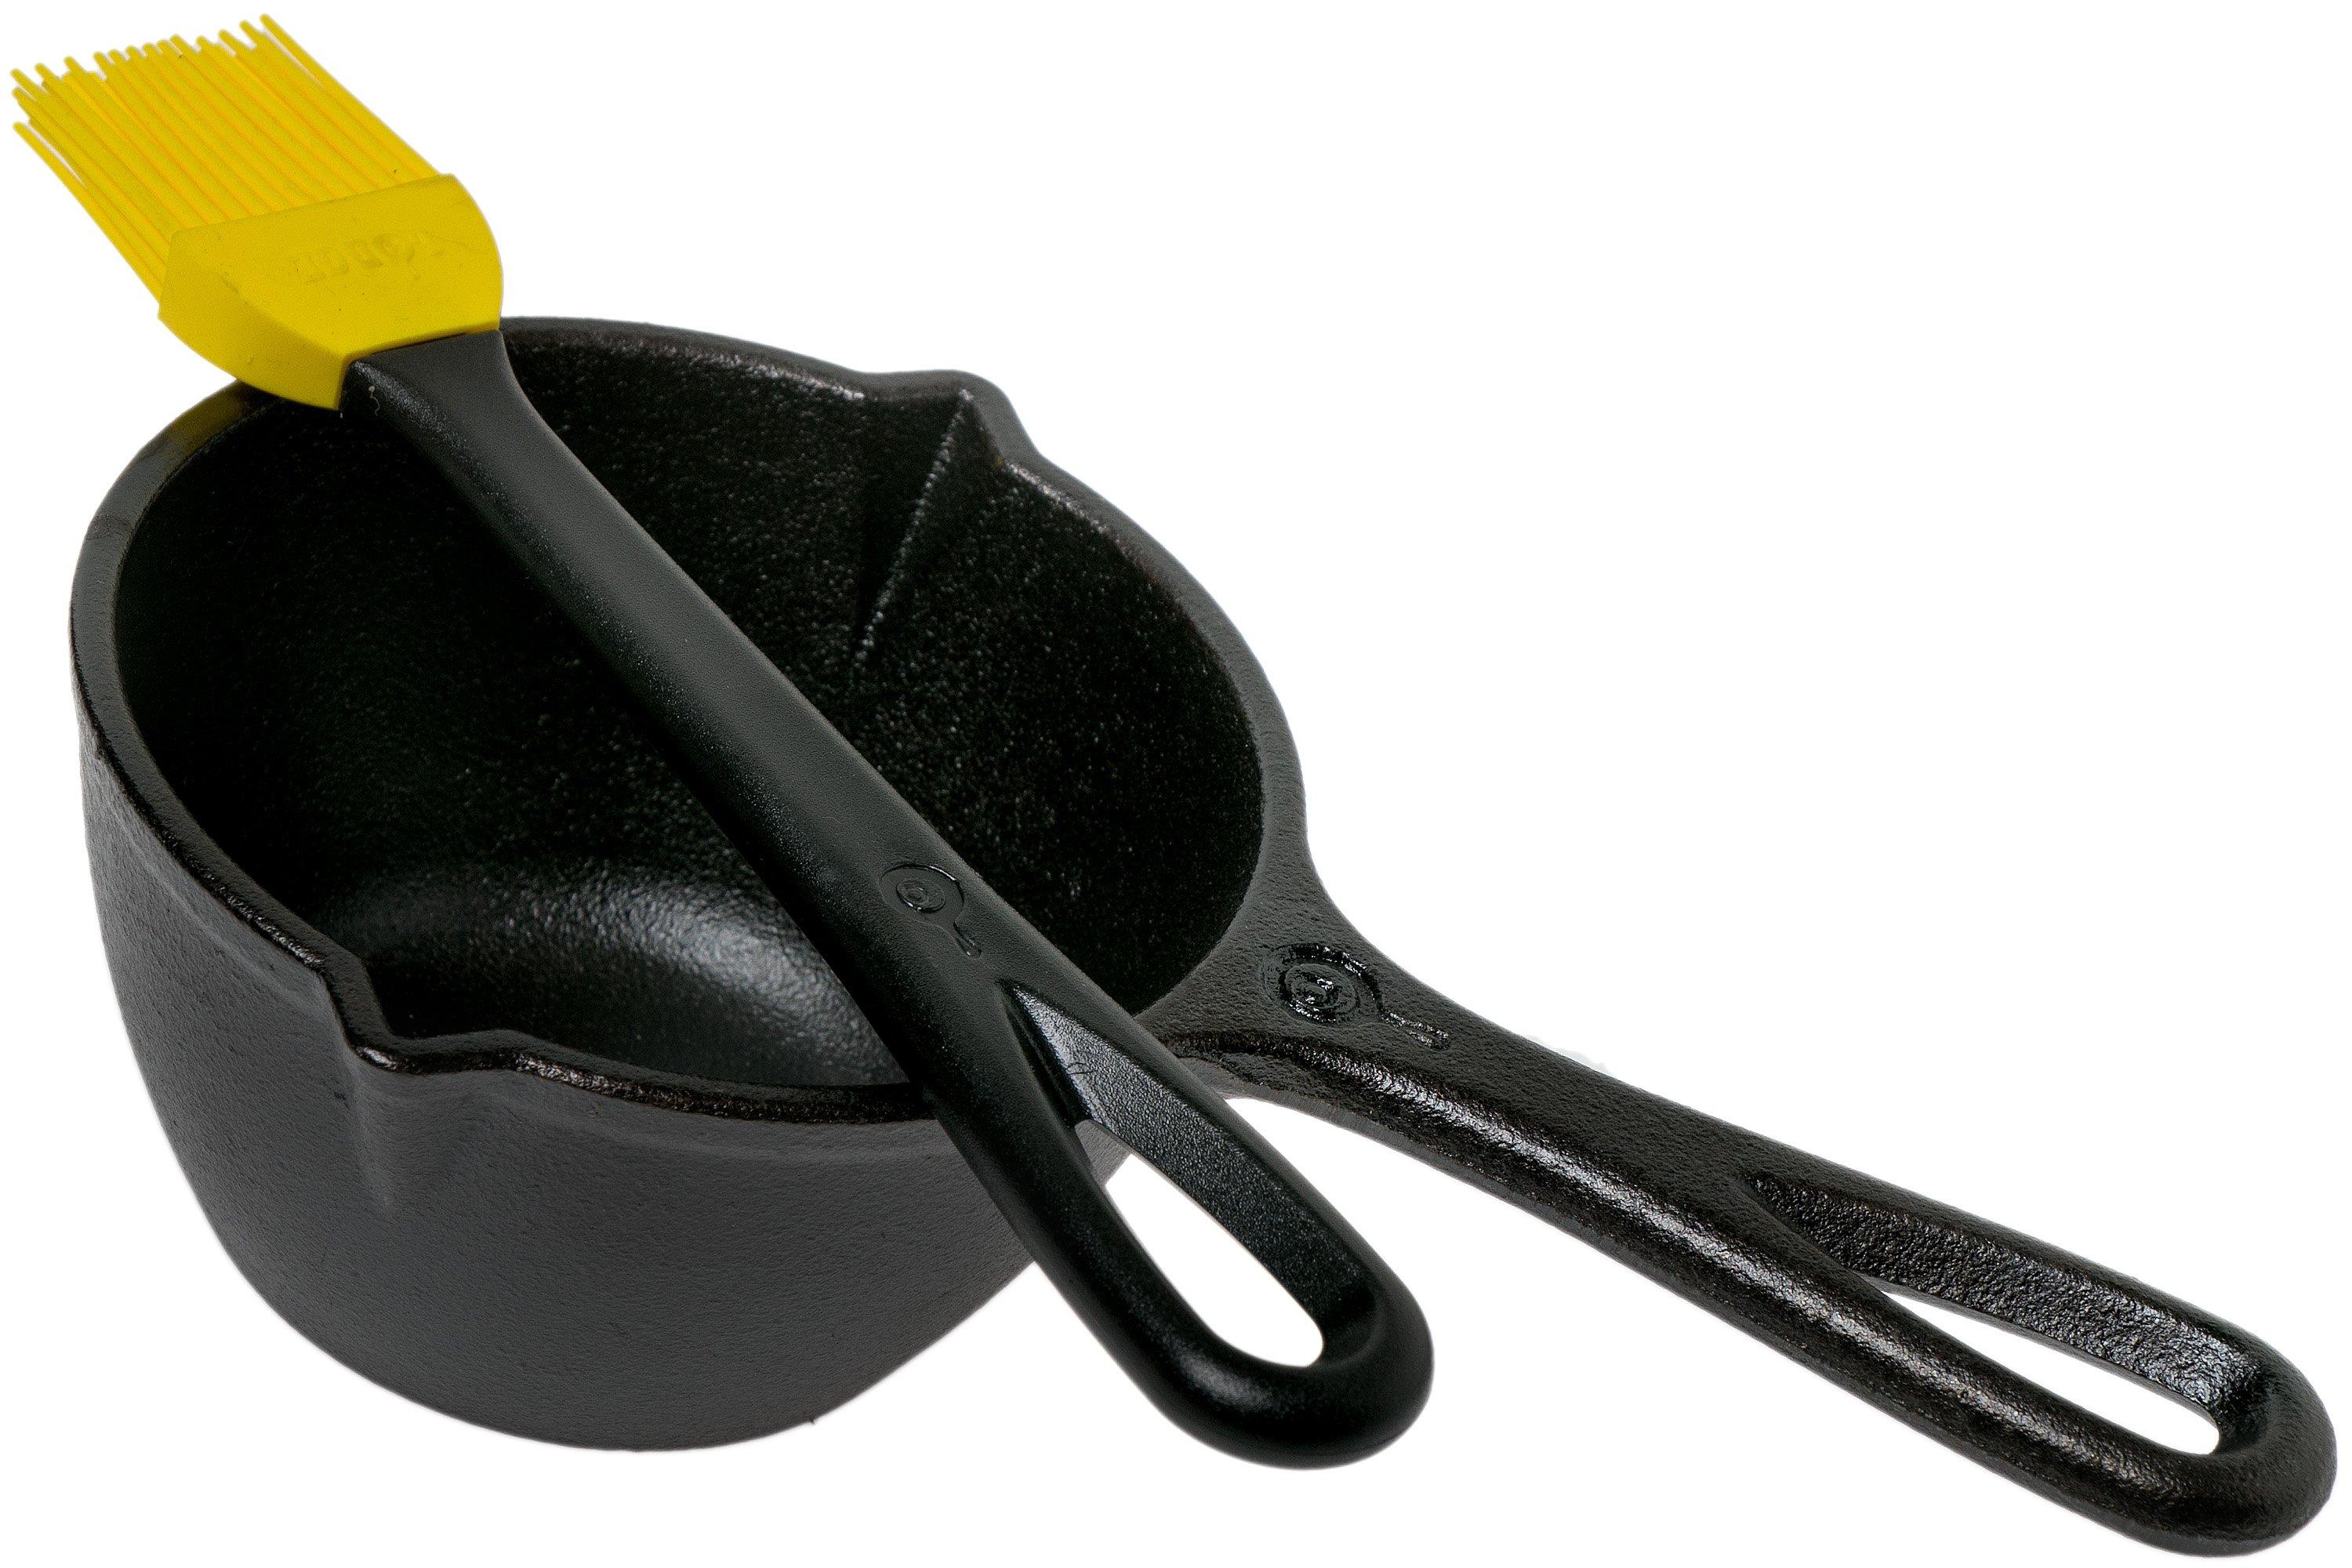 Lodge Cast Iron Melting Pot and Silicone Brush Set - Black/Yellow